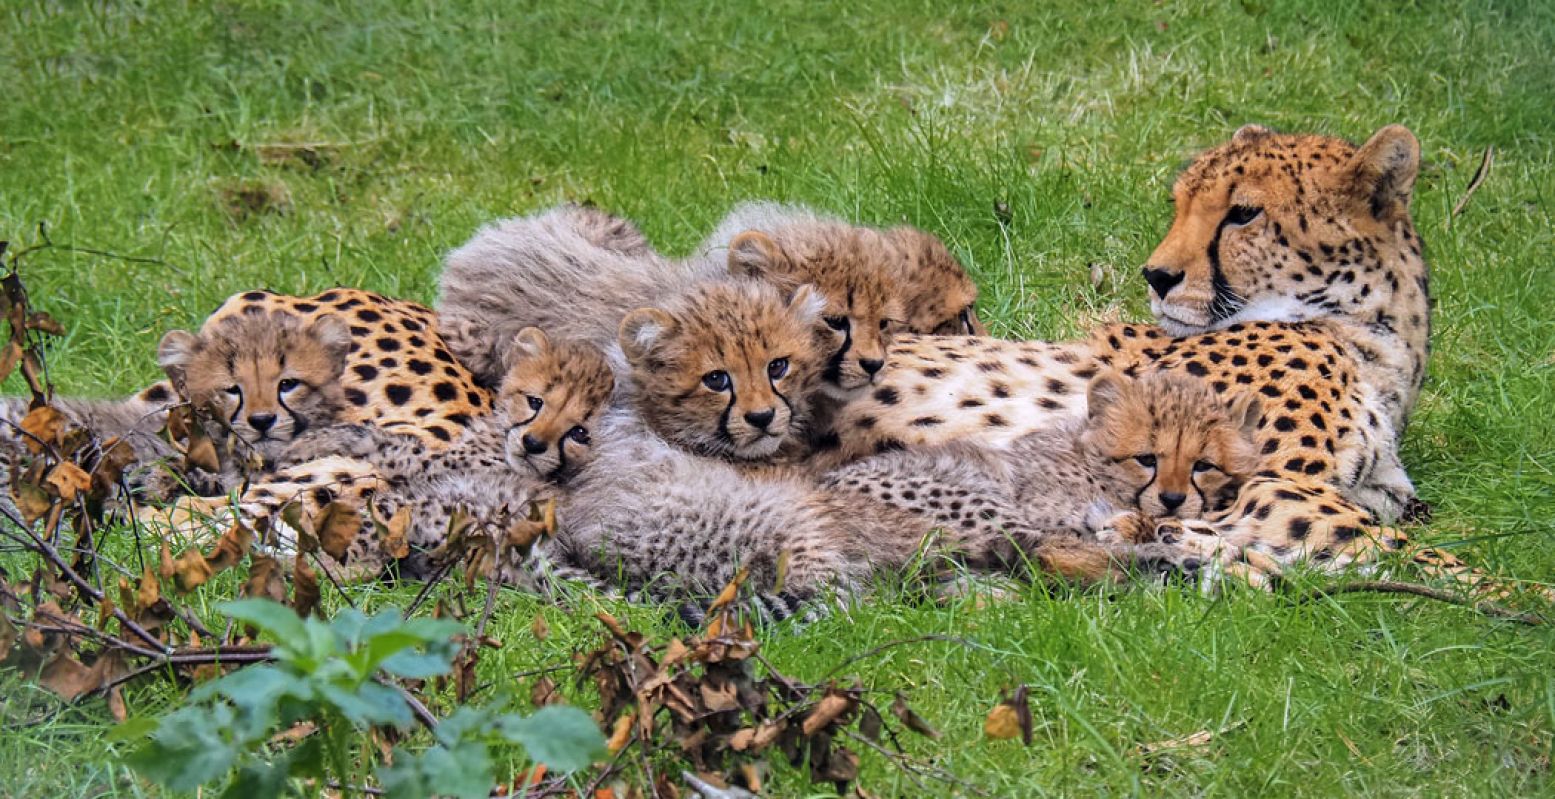 De zes cheetawelpjes van Safaripark Beekse Bergen zijn nu te bewonderen voor alle bezoekers. Foto: Beekse Bergen / Mariska Vermij - van Dijk